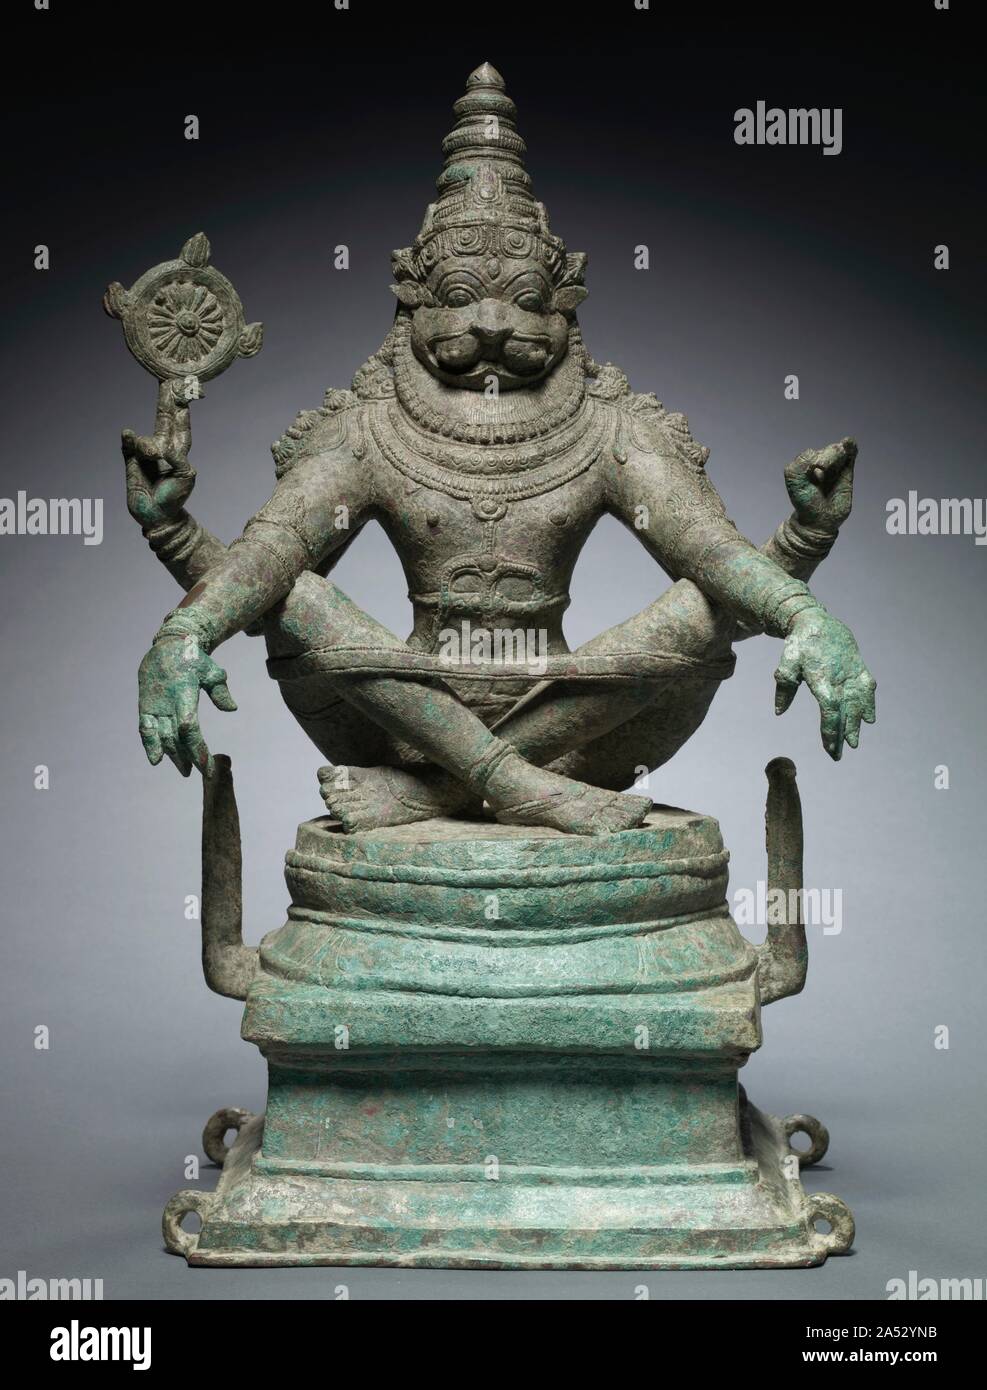 Yoga Narashimha, Vishnu dans son Man-Lion Avatar, c. 1250. Narasimha signifie "homme-lion" en Sanskrit, et c'est le nom de l'un des dix grands avatars, ou d'incarnations, du dieu hindou Vishnu. Pour les amateurs, l'homme-lion forme rappelle un mythe qui décrit ses super la défaite d'un ennemi démoniaque invincible en apparence. Cette rare forme iconique incarne aussi le pouvoir royal et la discipline yogique. L'intensité de sa concentration est apparente dans l'expression de son visage sur le collier de la crinière, la posture tendue, la symétrie et les proportions parfaites de ses quatre bras le corps. La bande de yoga tient la traversé Banque D'Images